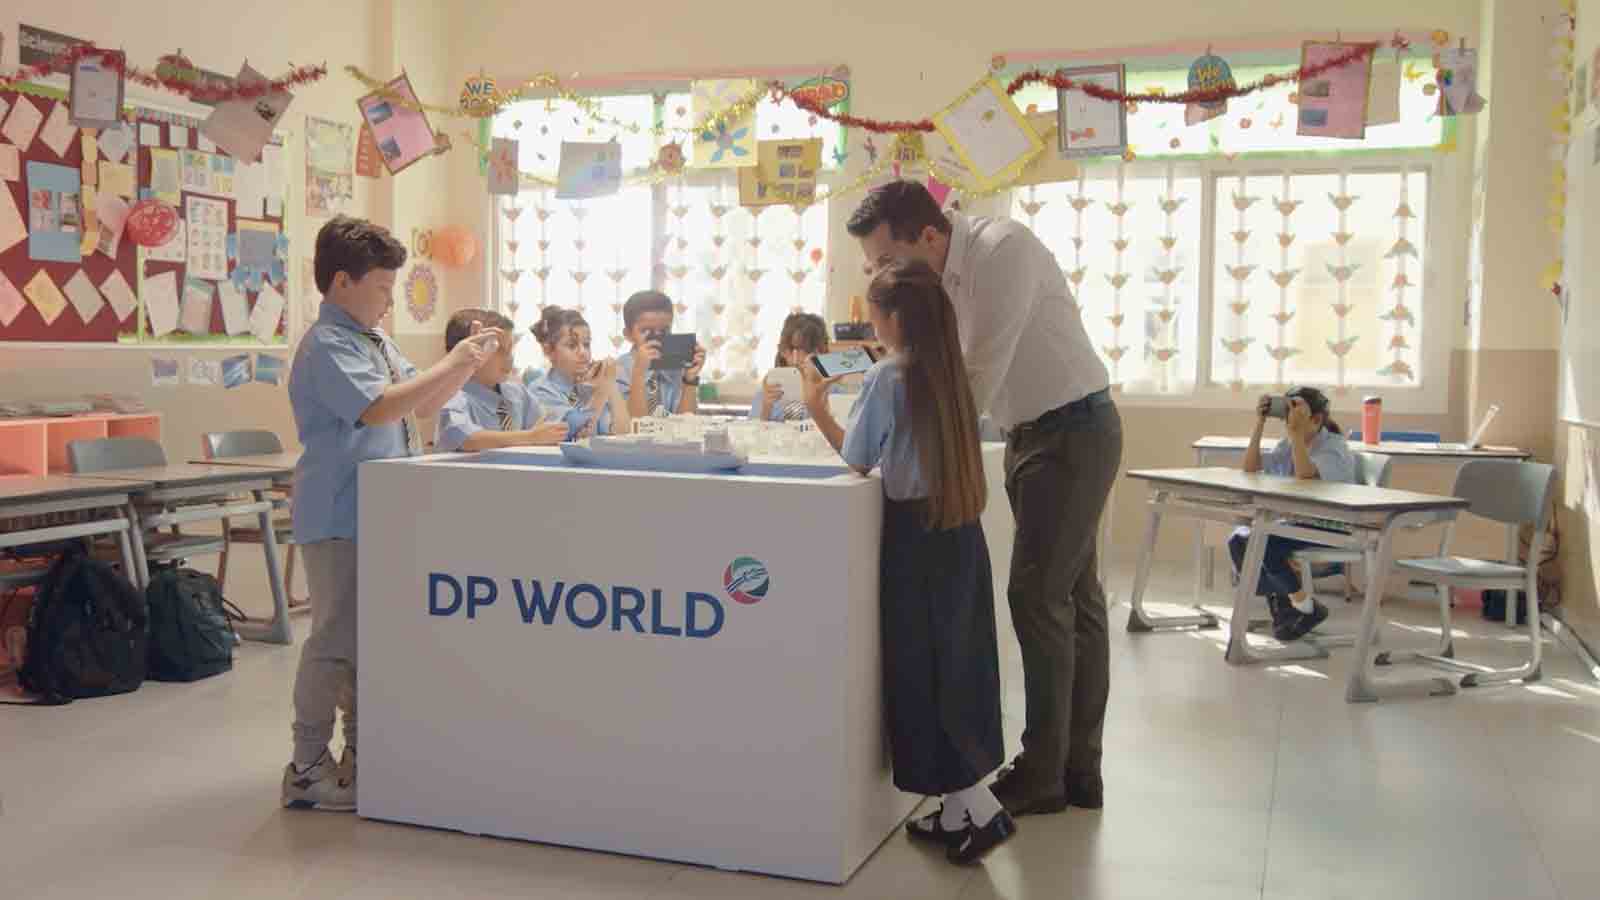 Children at DP World kiosk